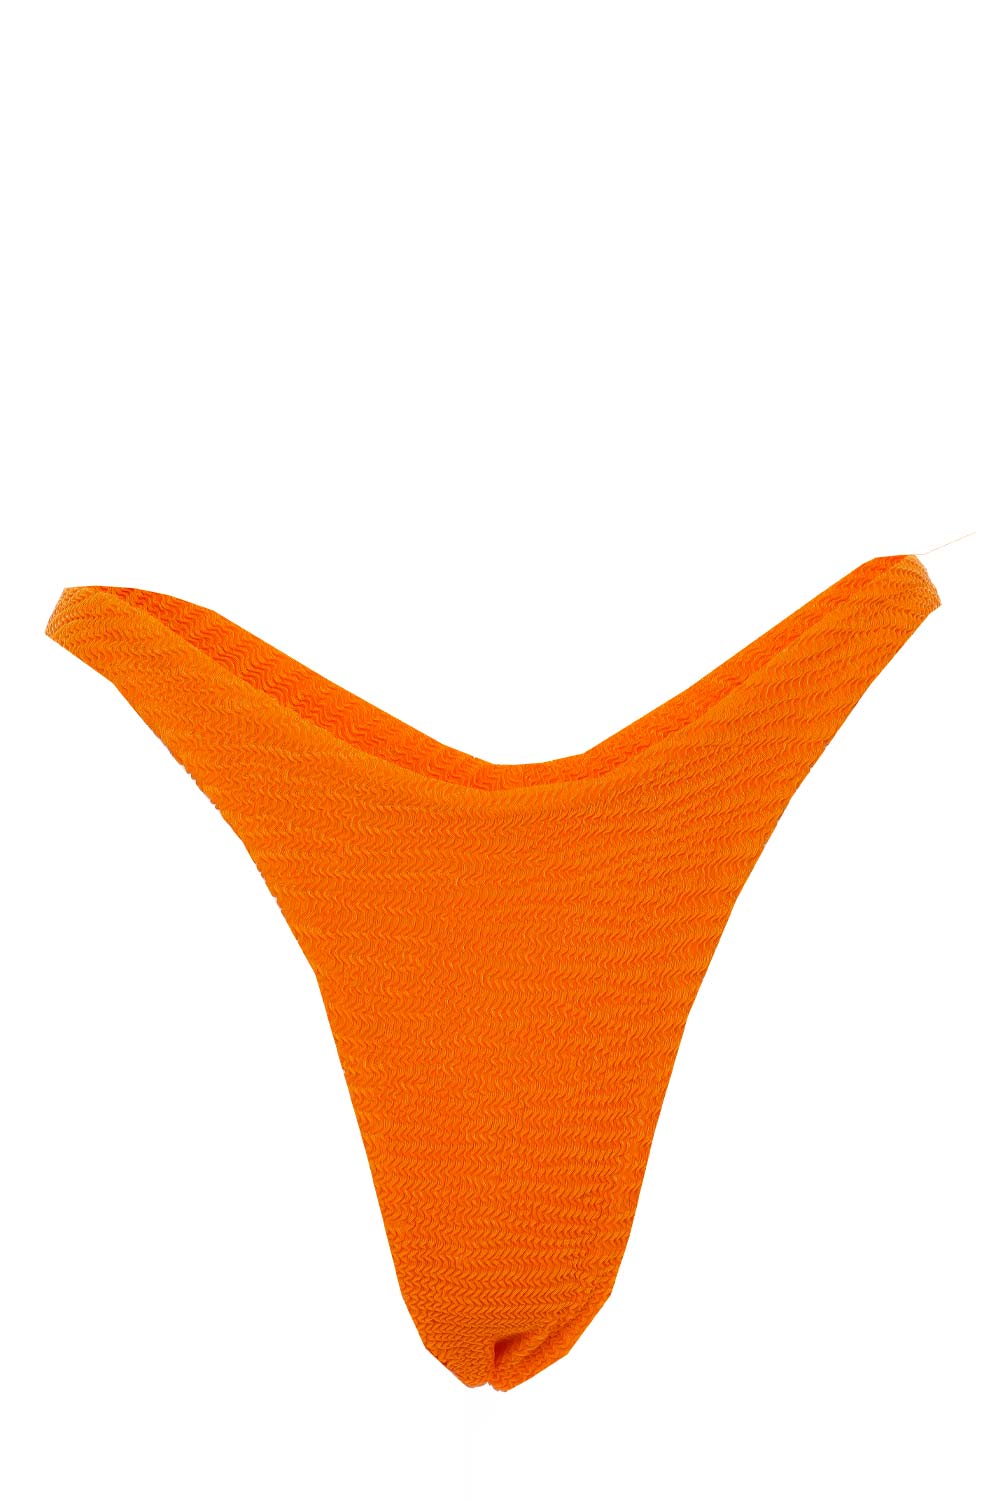 OneOne Swimwear Madison Tangerine Full Coverage Bikini Bottoms